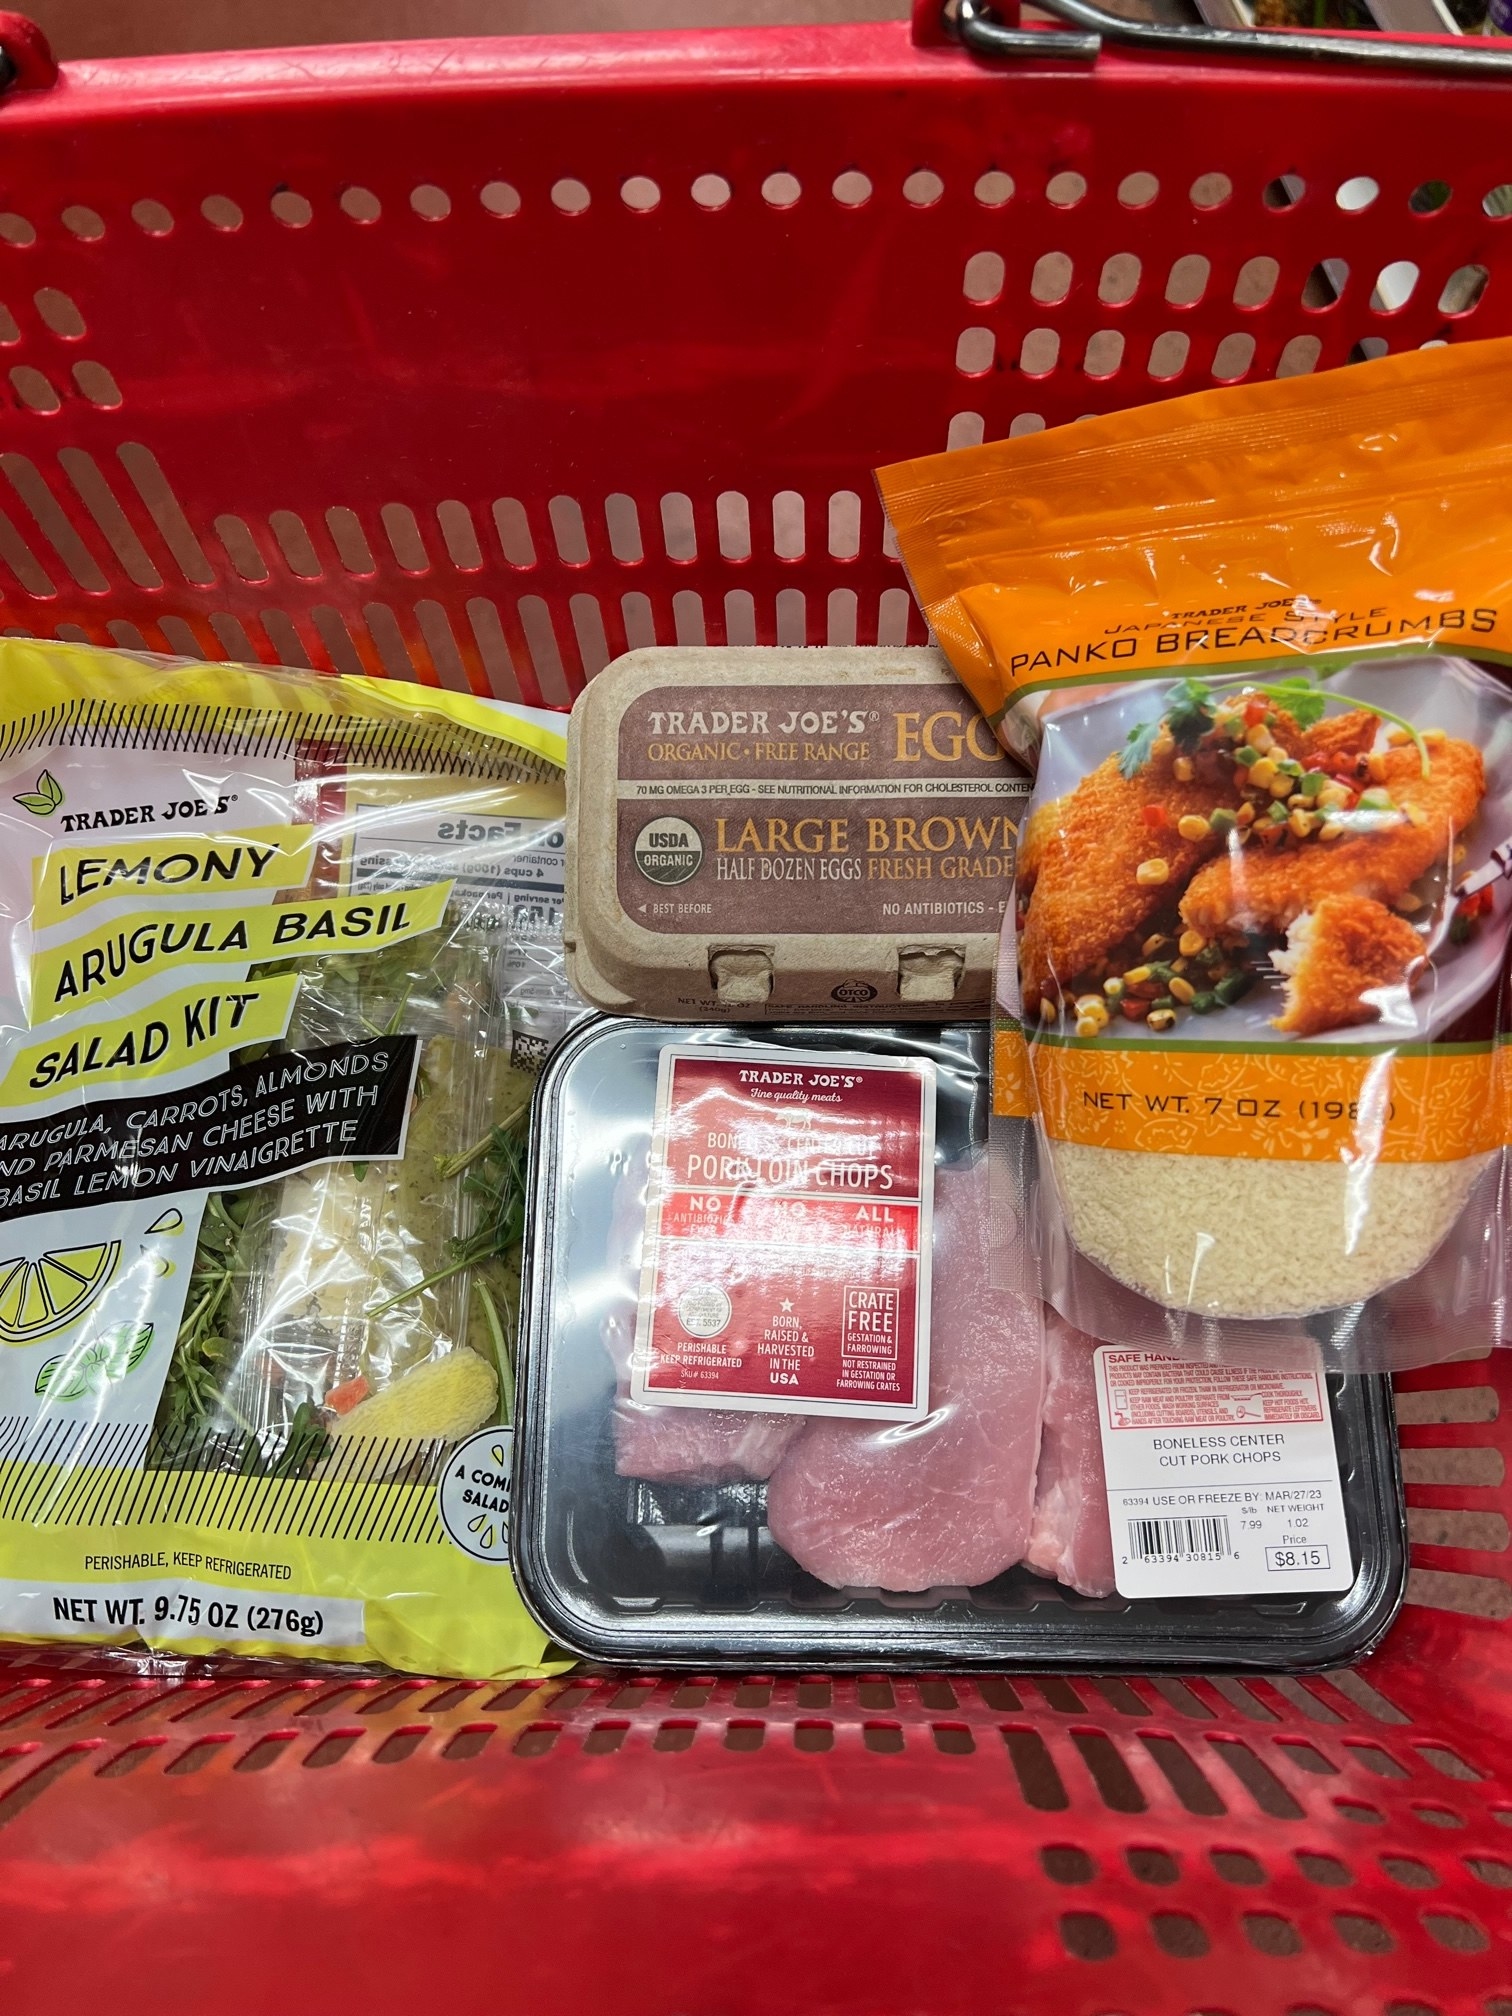 Pork chops, lemony arugula basil salad kit, panko, and eggs.